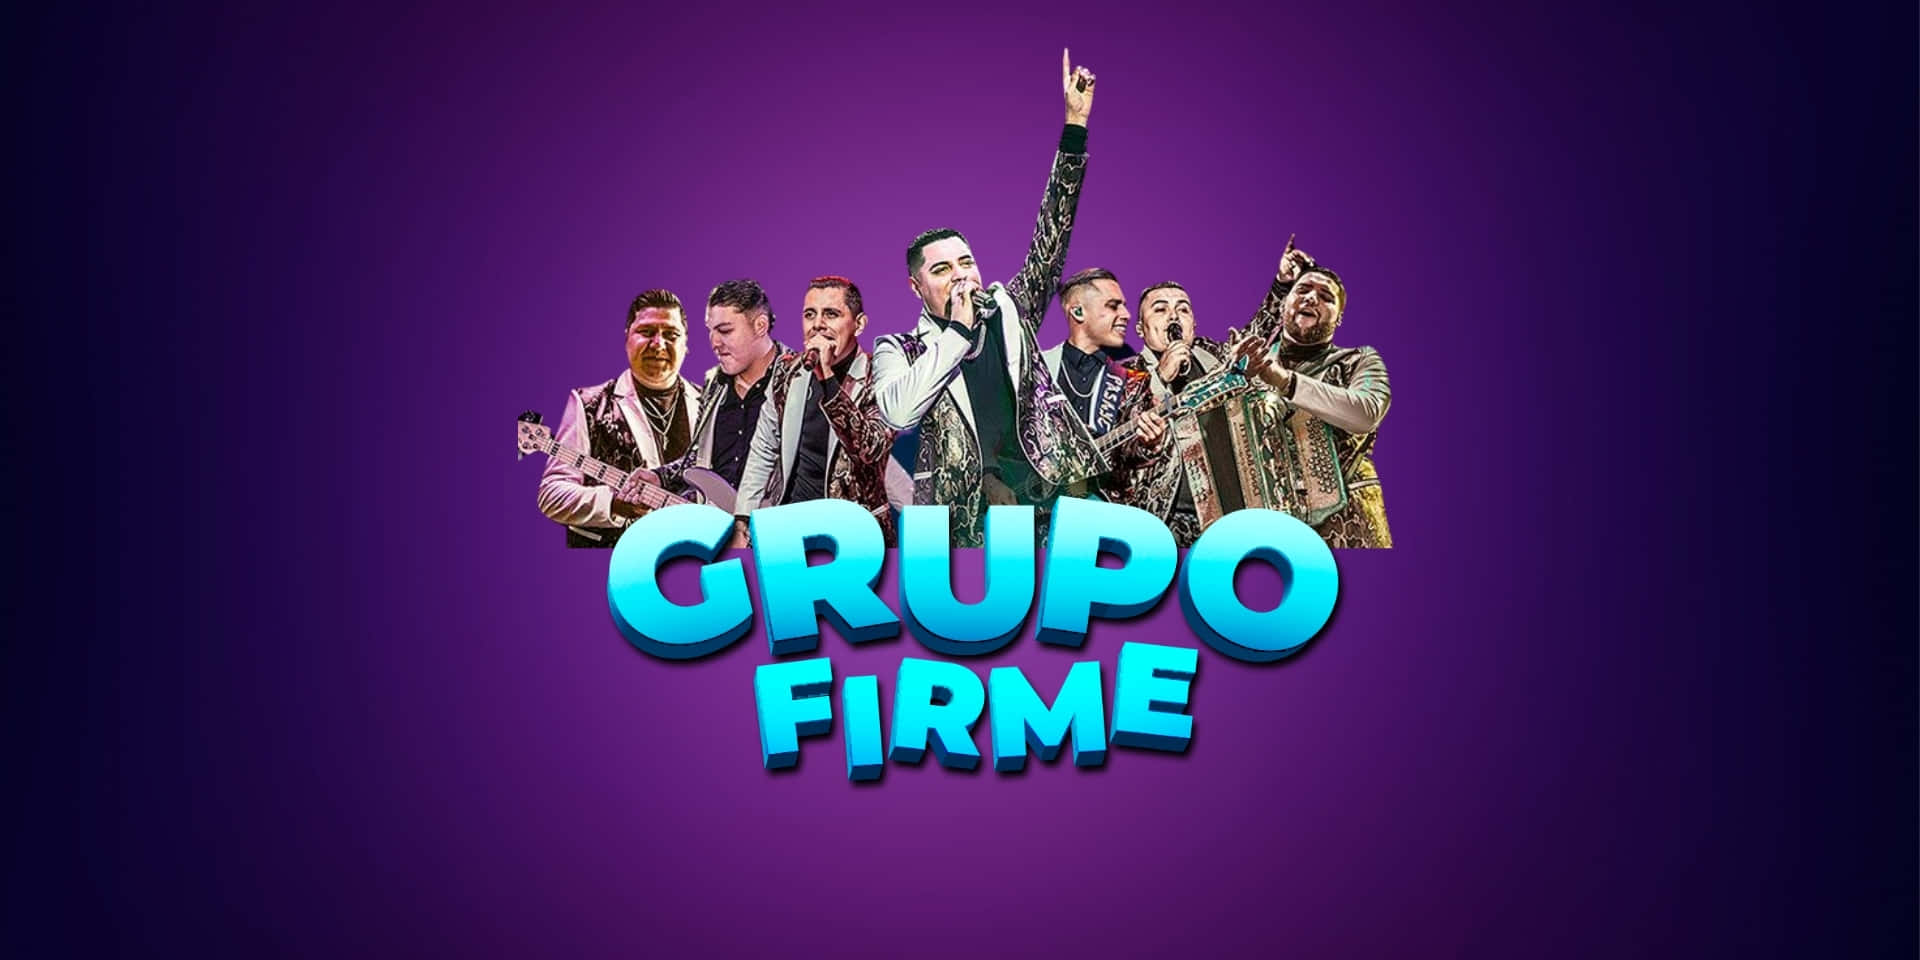 Grupo Firme giver dig det bedste regionale mexicanske musik. Wallpaper